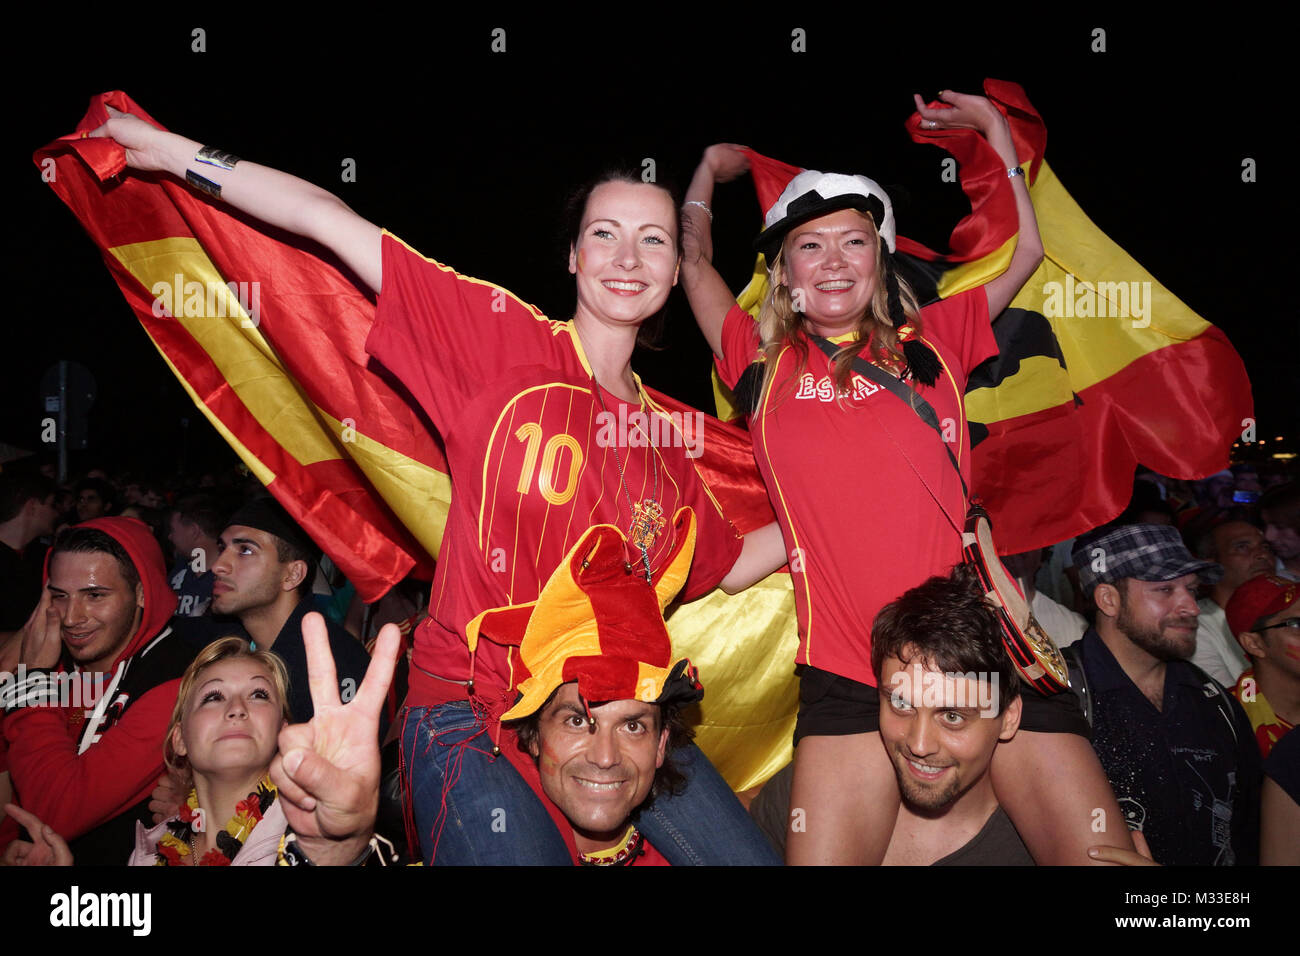 Laut jubelnde Fußballfans beim Sieg von Spanien gegen Italien an der Fanmeile zur Europameisterschaft 2012 am Brandenburger Tor en Berlín. Foto de stock